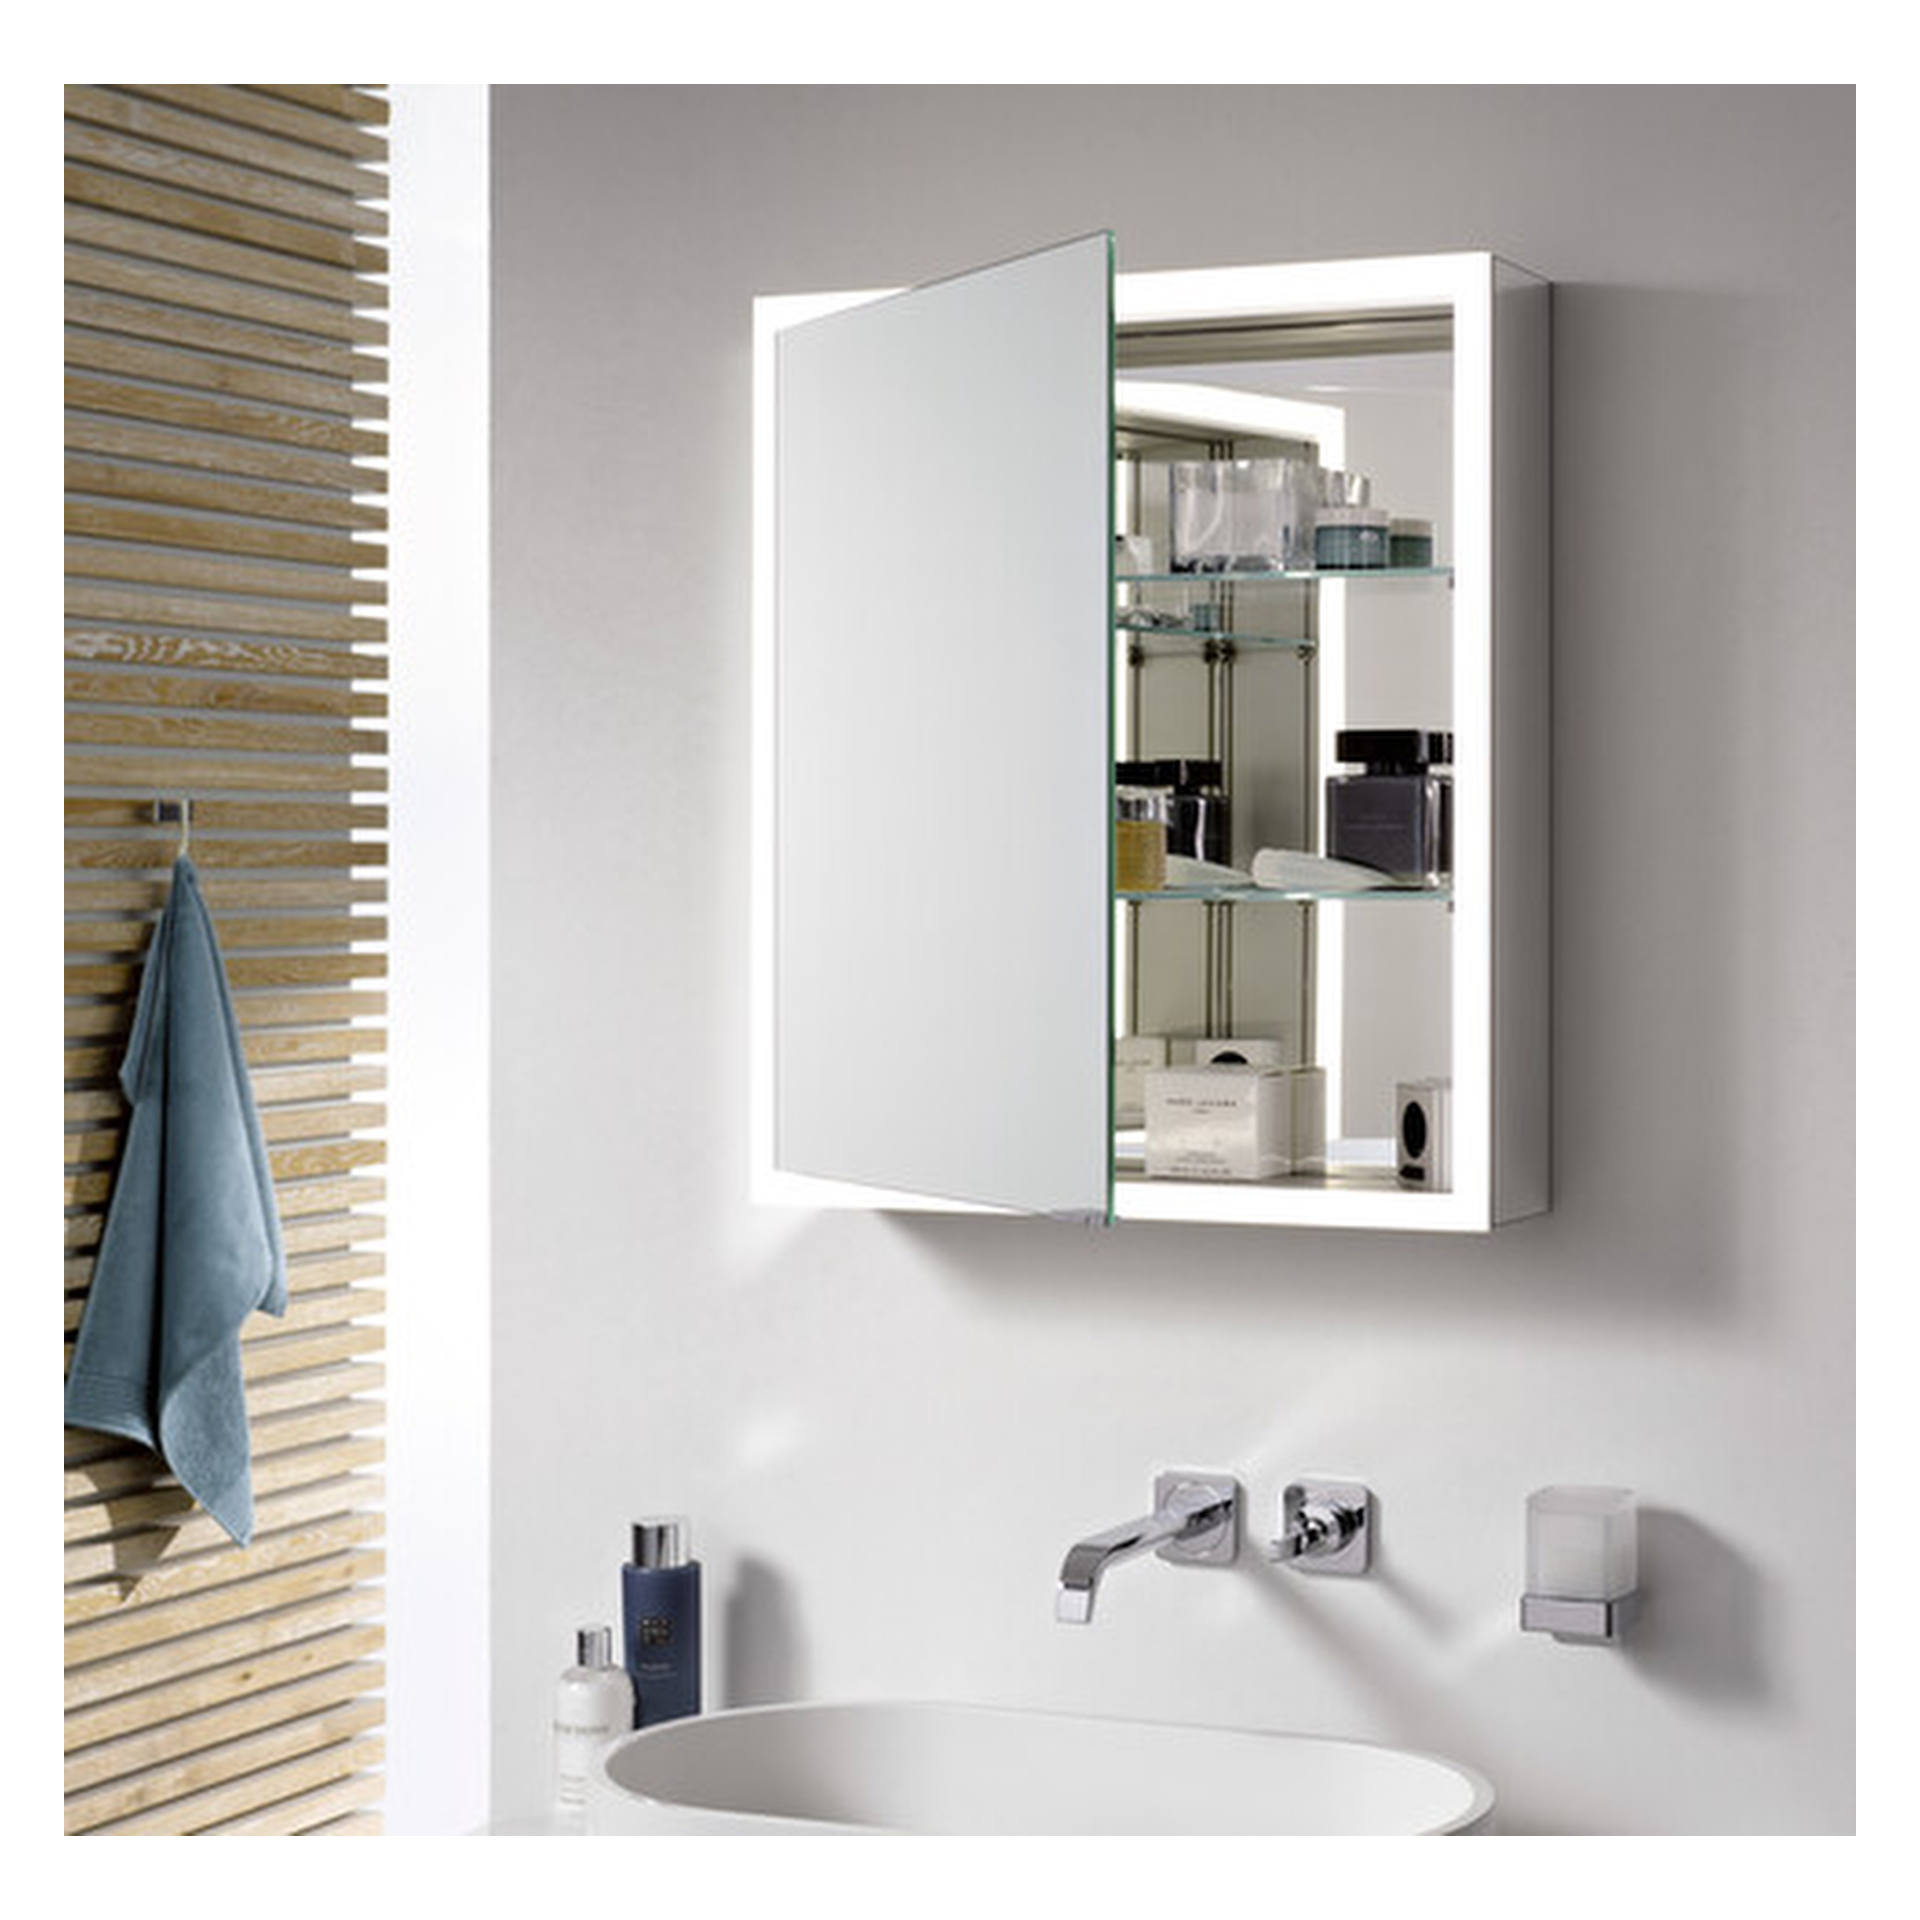 emco Einbaurahmen für Spiegelschrank „asis prime“ 132,2 × 72,2 × 15 cm 